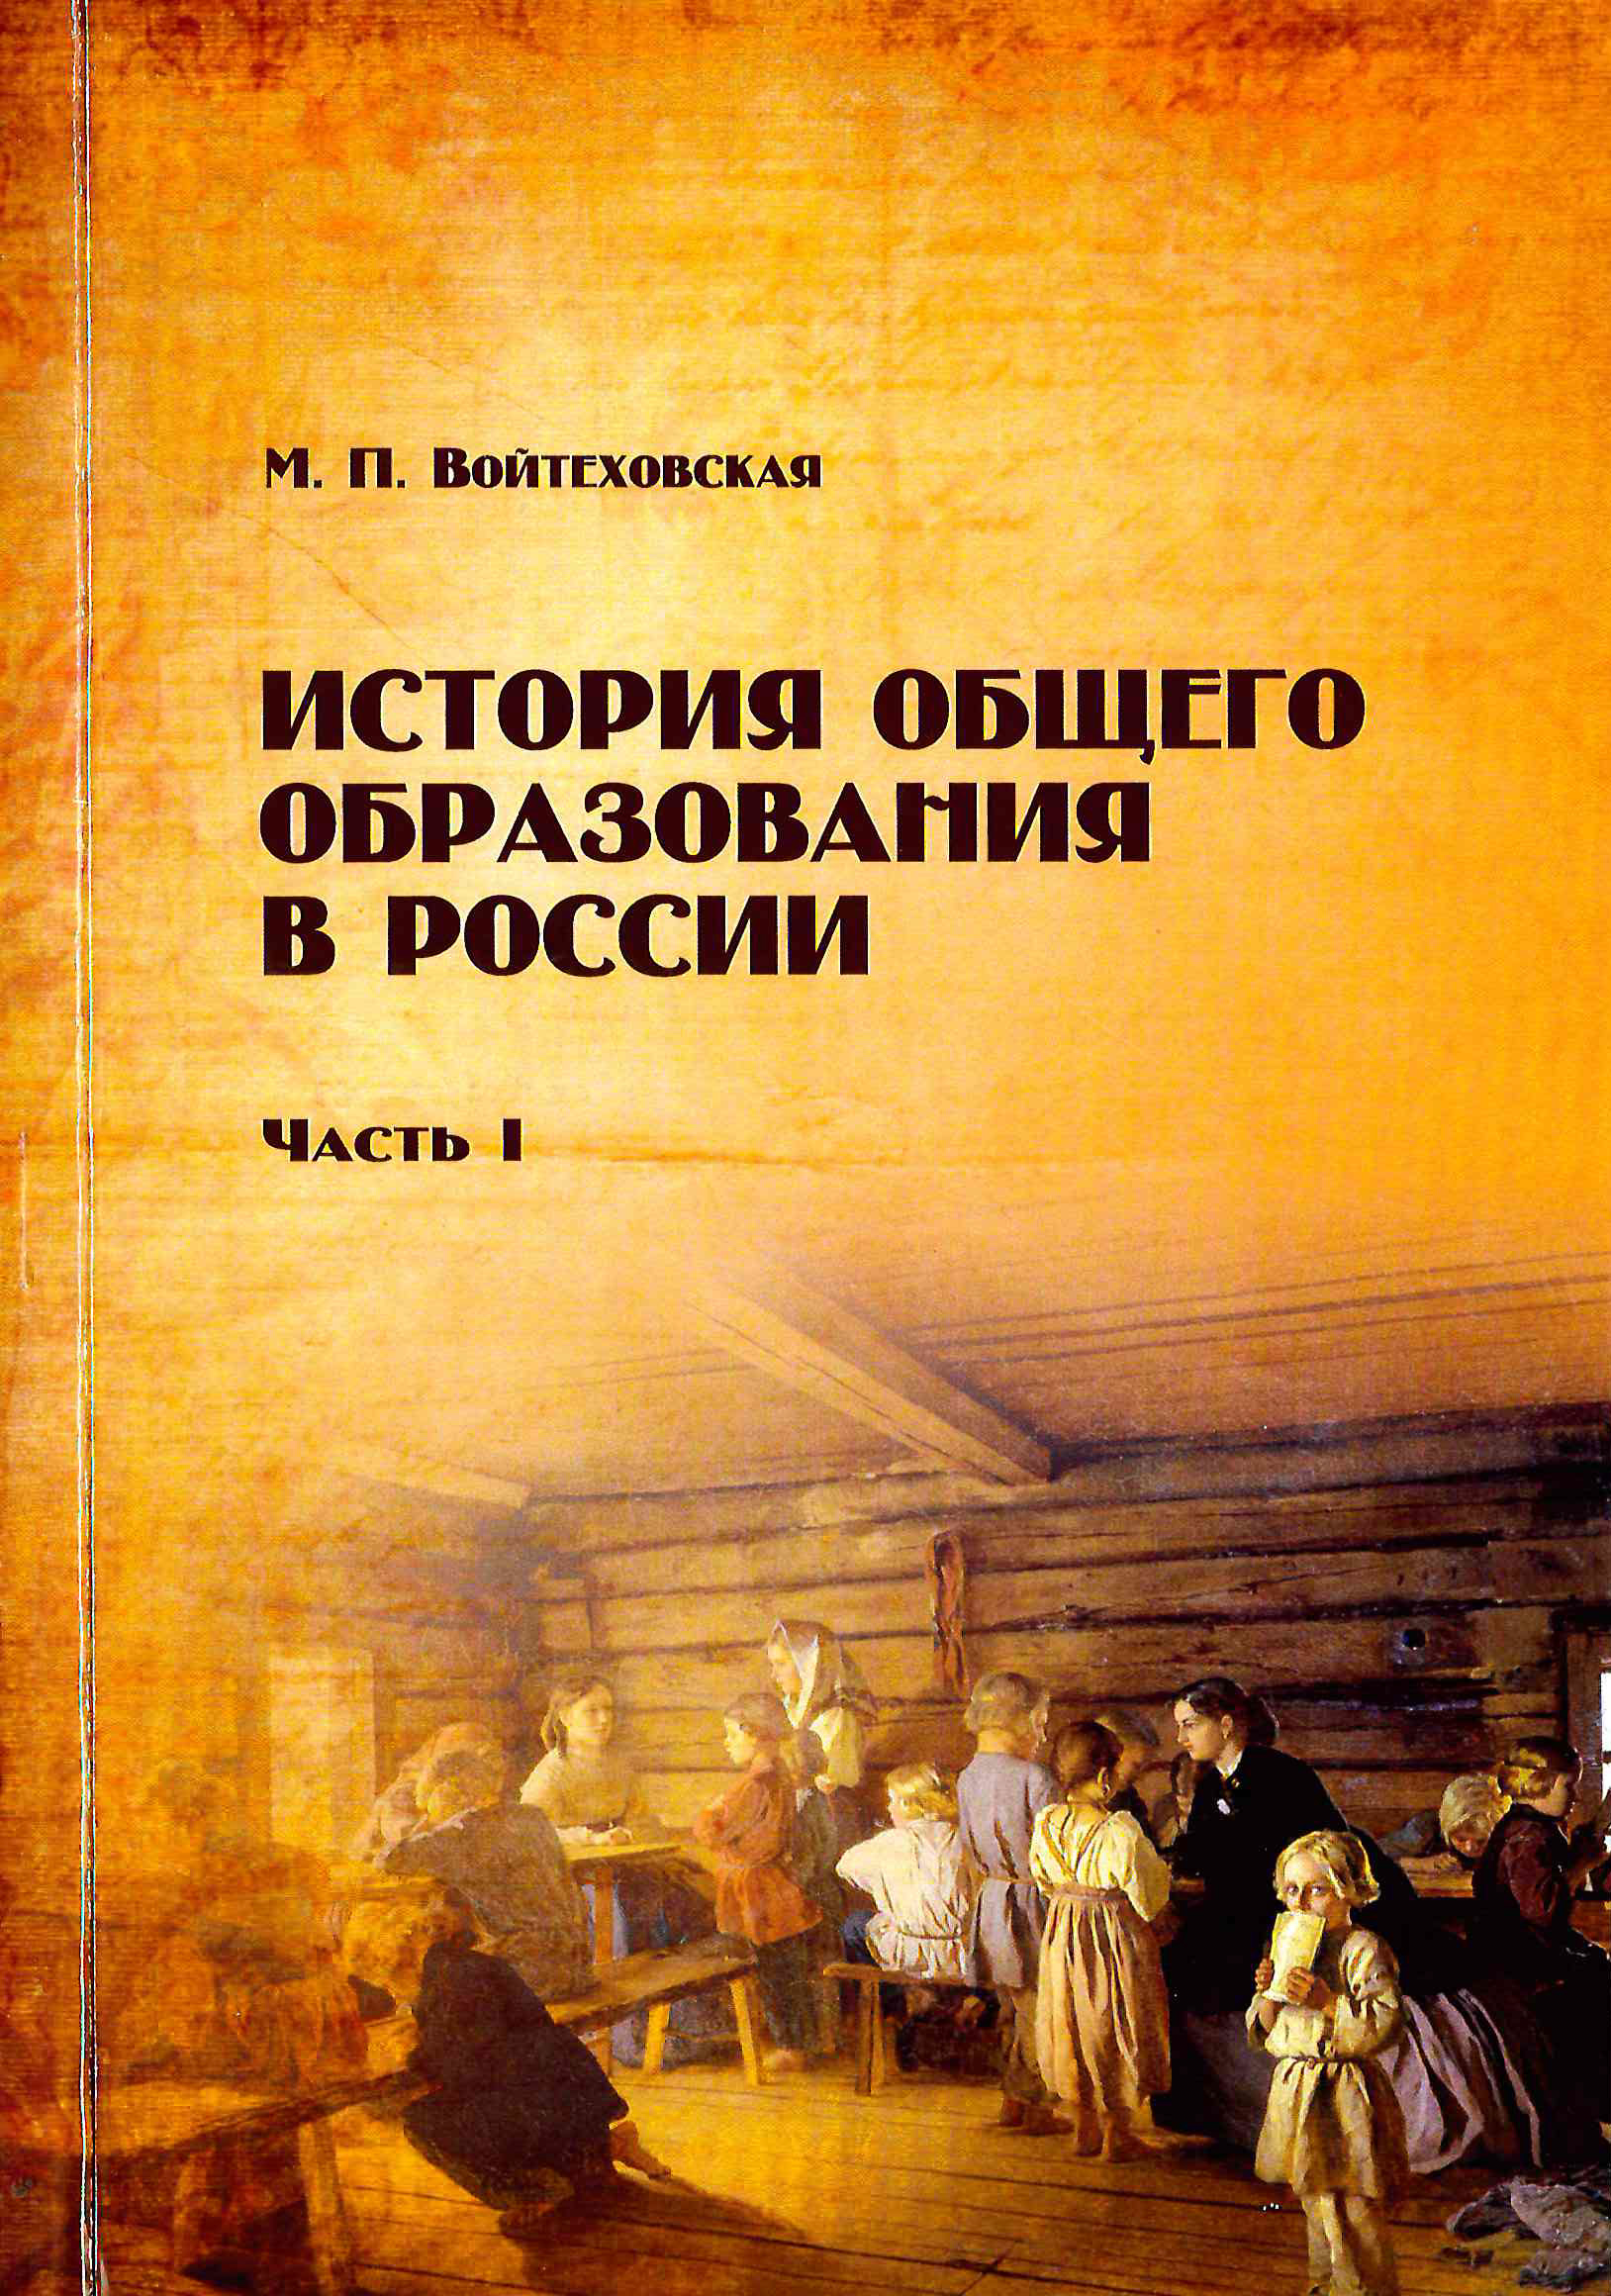 Обложка История общего образования в России 1 часть